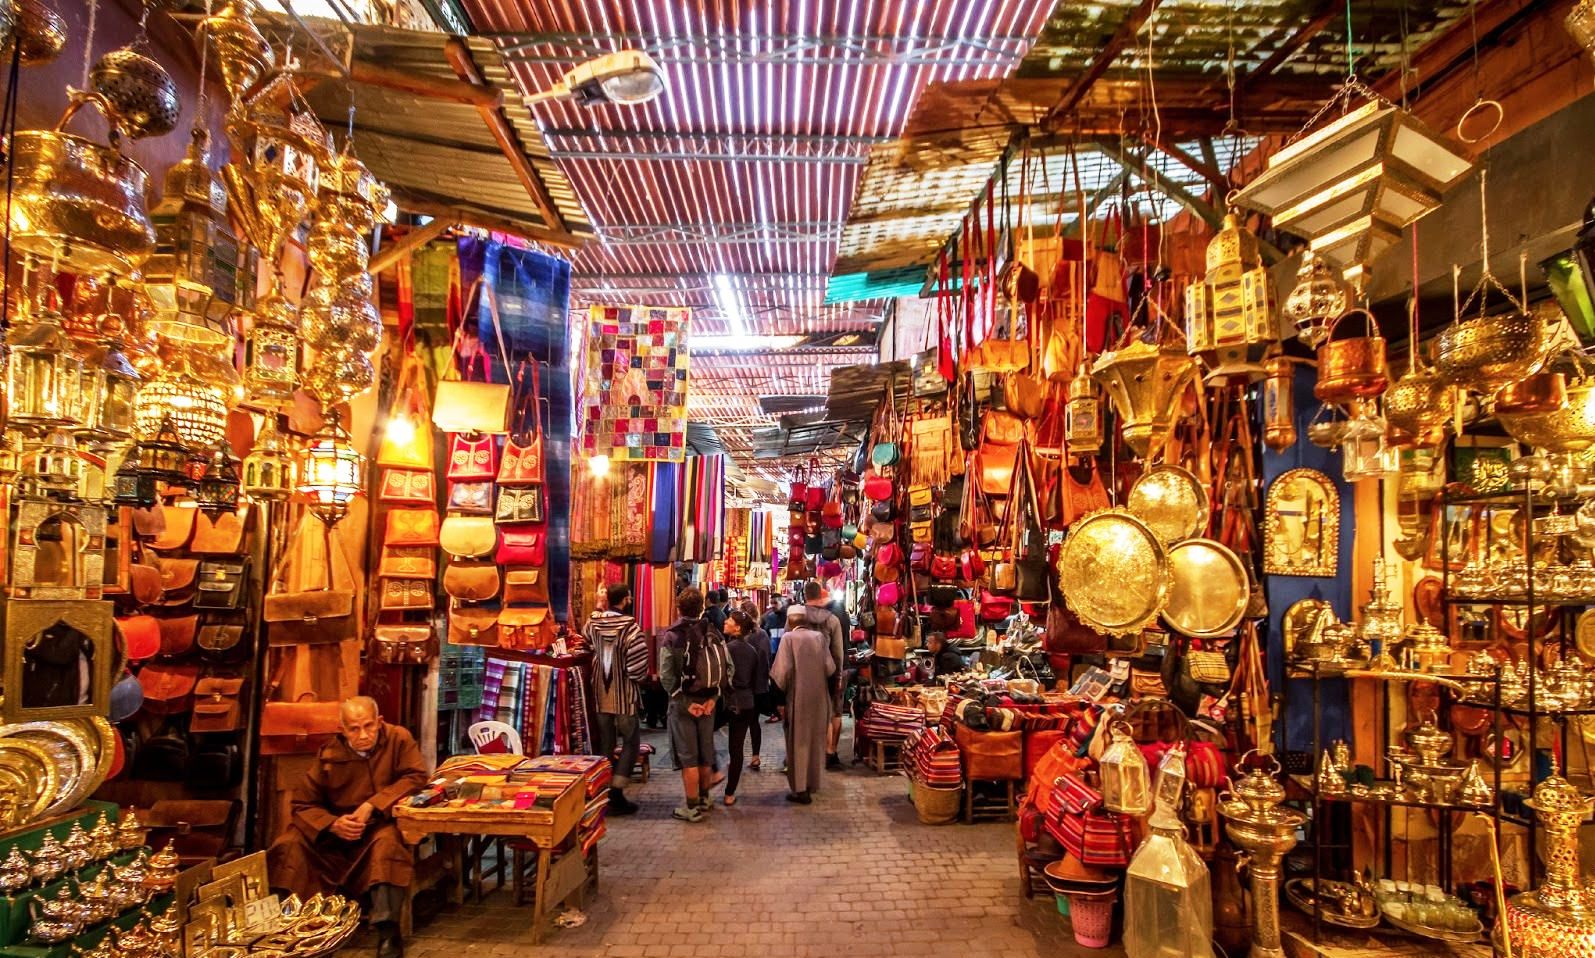 10 days splendors of Morocco tailor-made tour from Marrakech to explore the splendors of Morocco